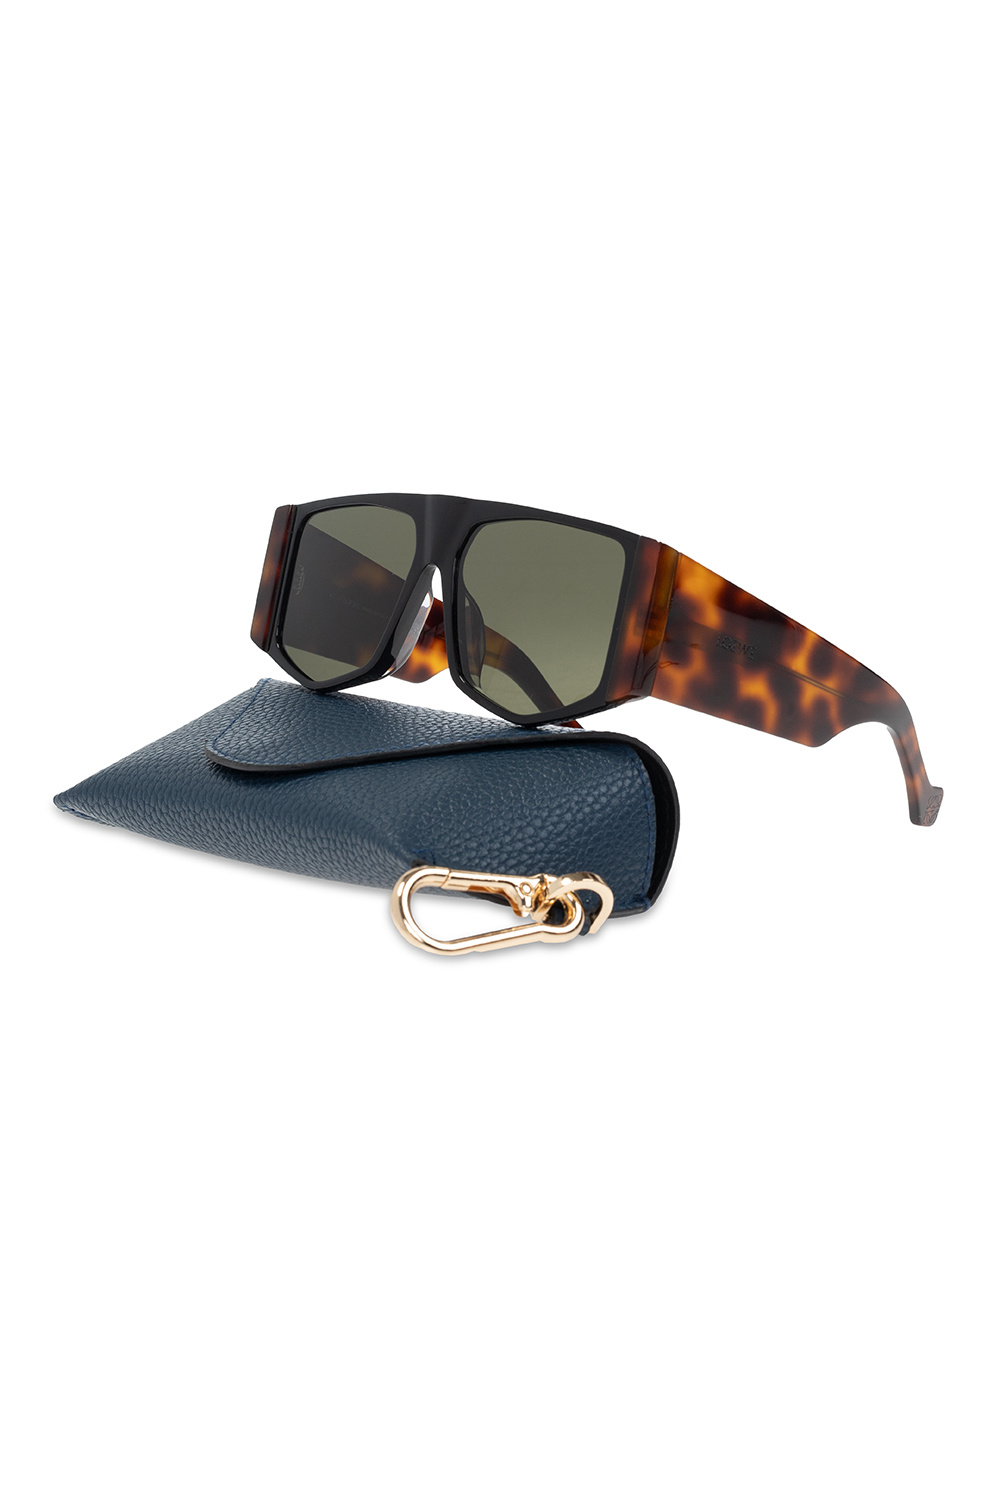 IetpShops, Ray-Ban Polarized Aviator Sunglasses